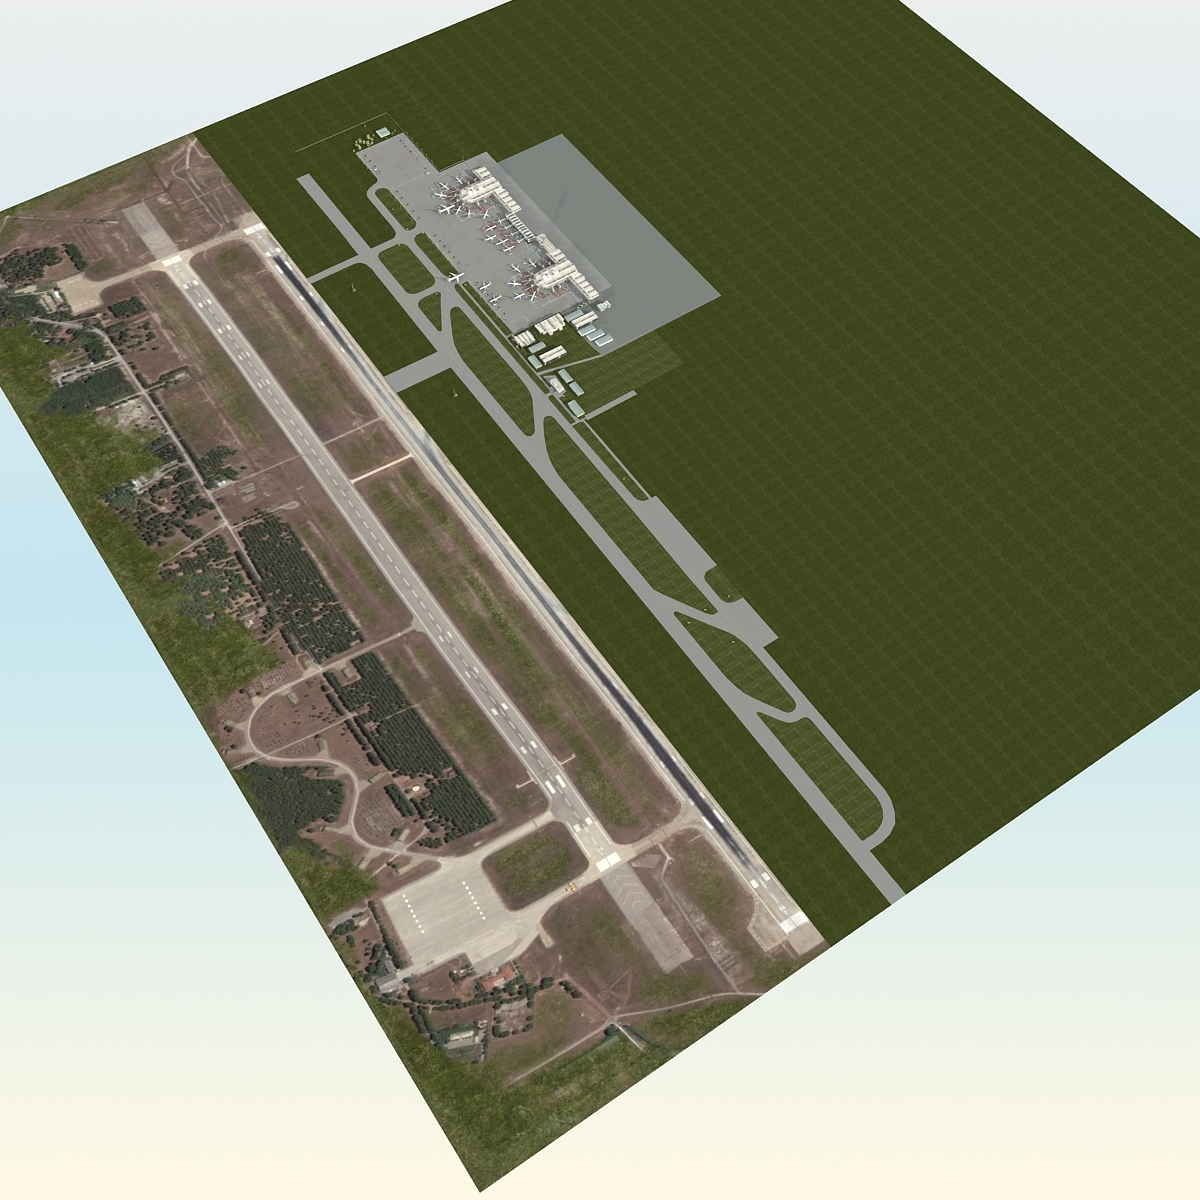 高级机场车辆和飞机3d模型